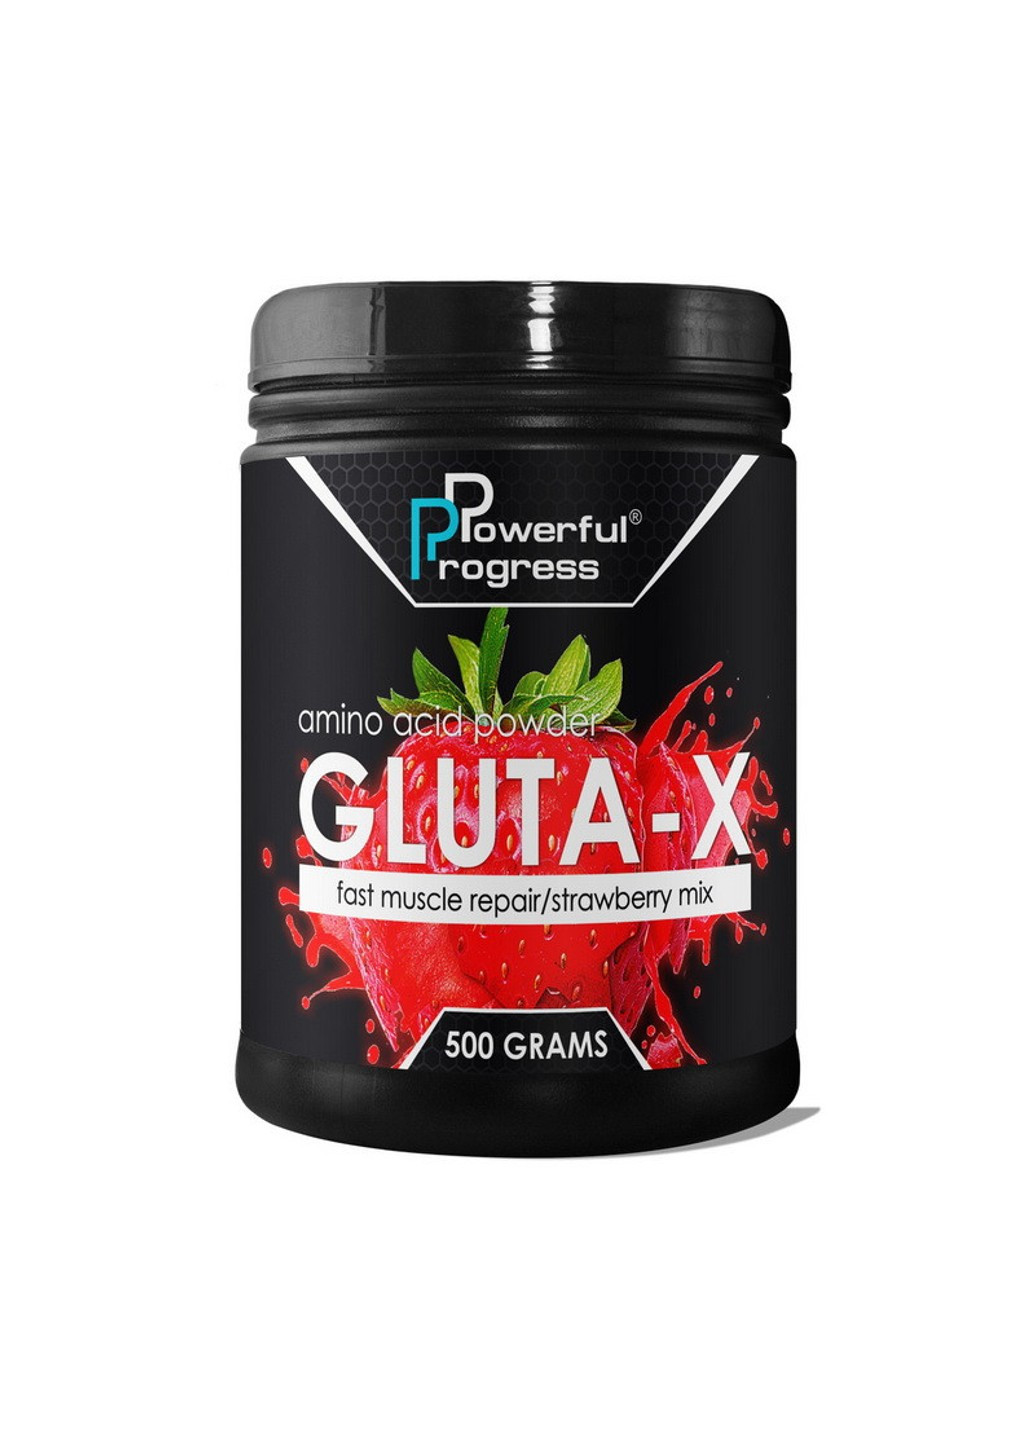 Глютамін Gluta-X 500 г поверфул прогрес orange Powerful Progress (255362205)